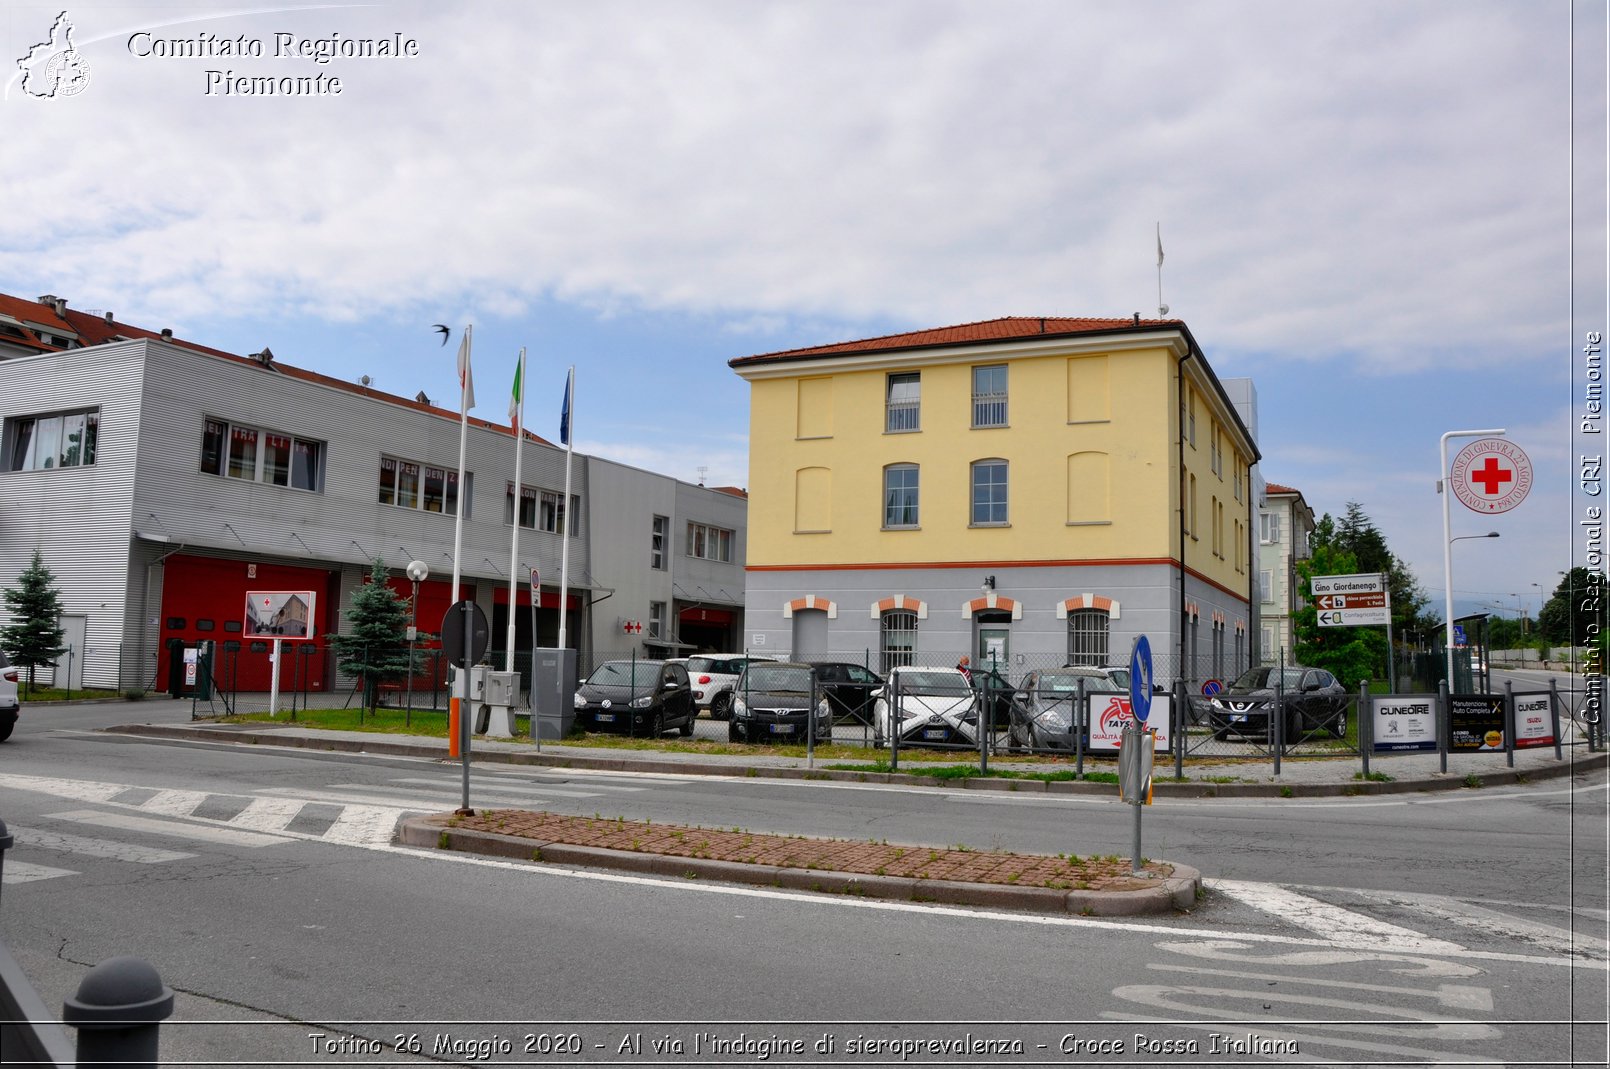 Torino 26 Maggio 2020 - Al via l'indagine di sieroprevalenza - Croce Rossa Italiana